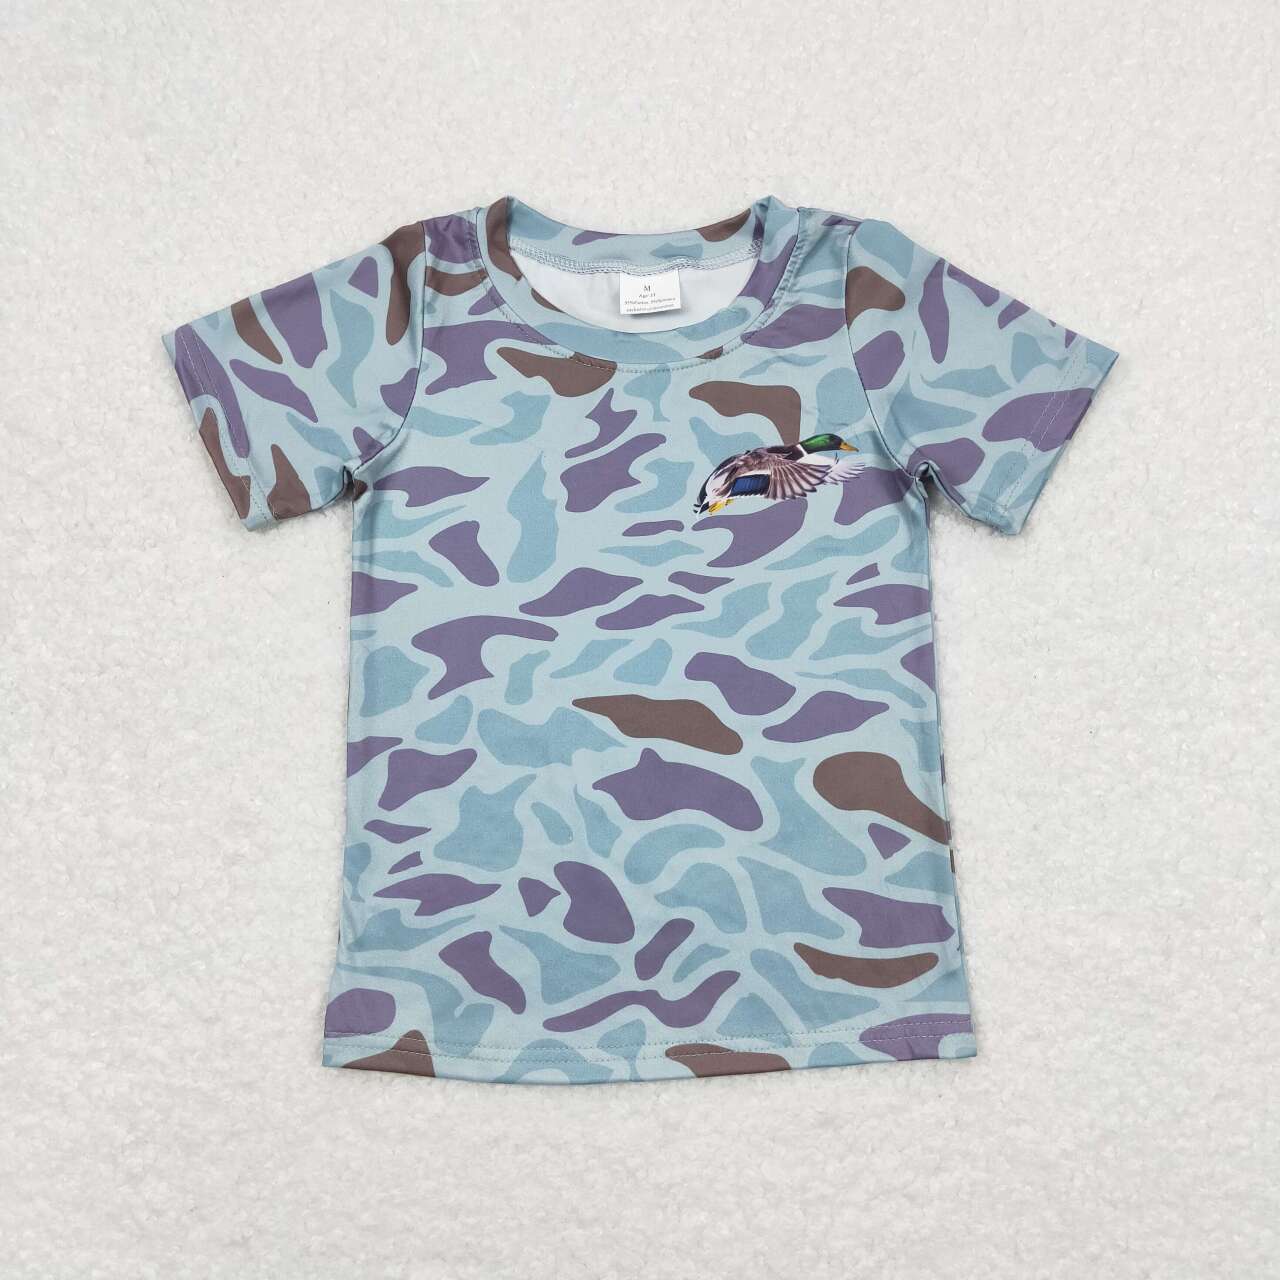 BT0598  Camo Duck Print Boys Summer Tee Shirts Top